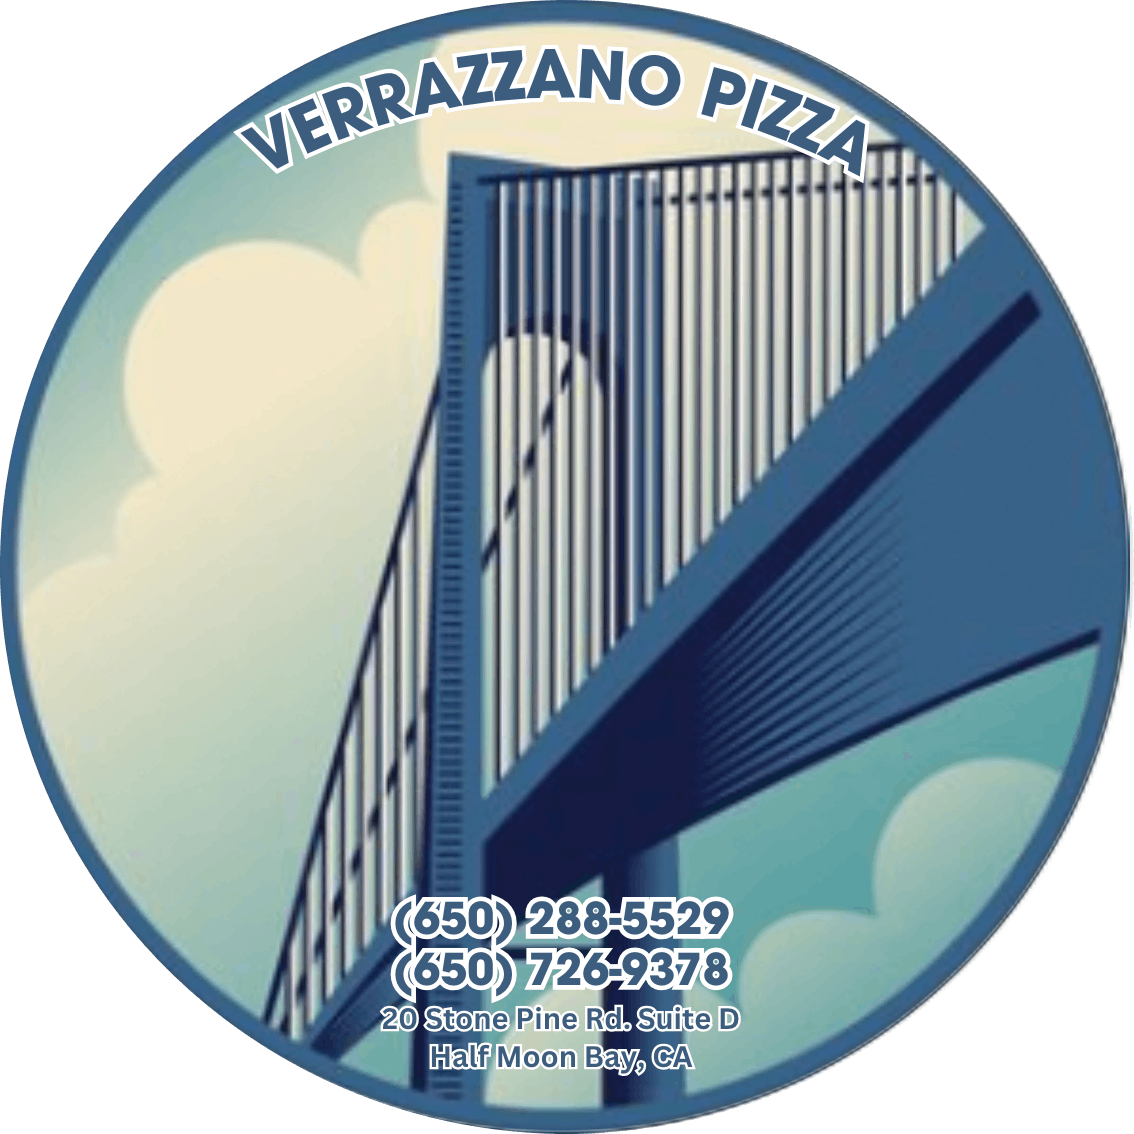 Verrazzano Pizza  Logo